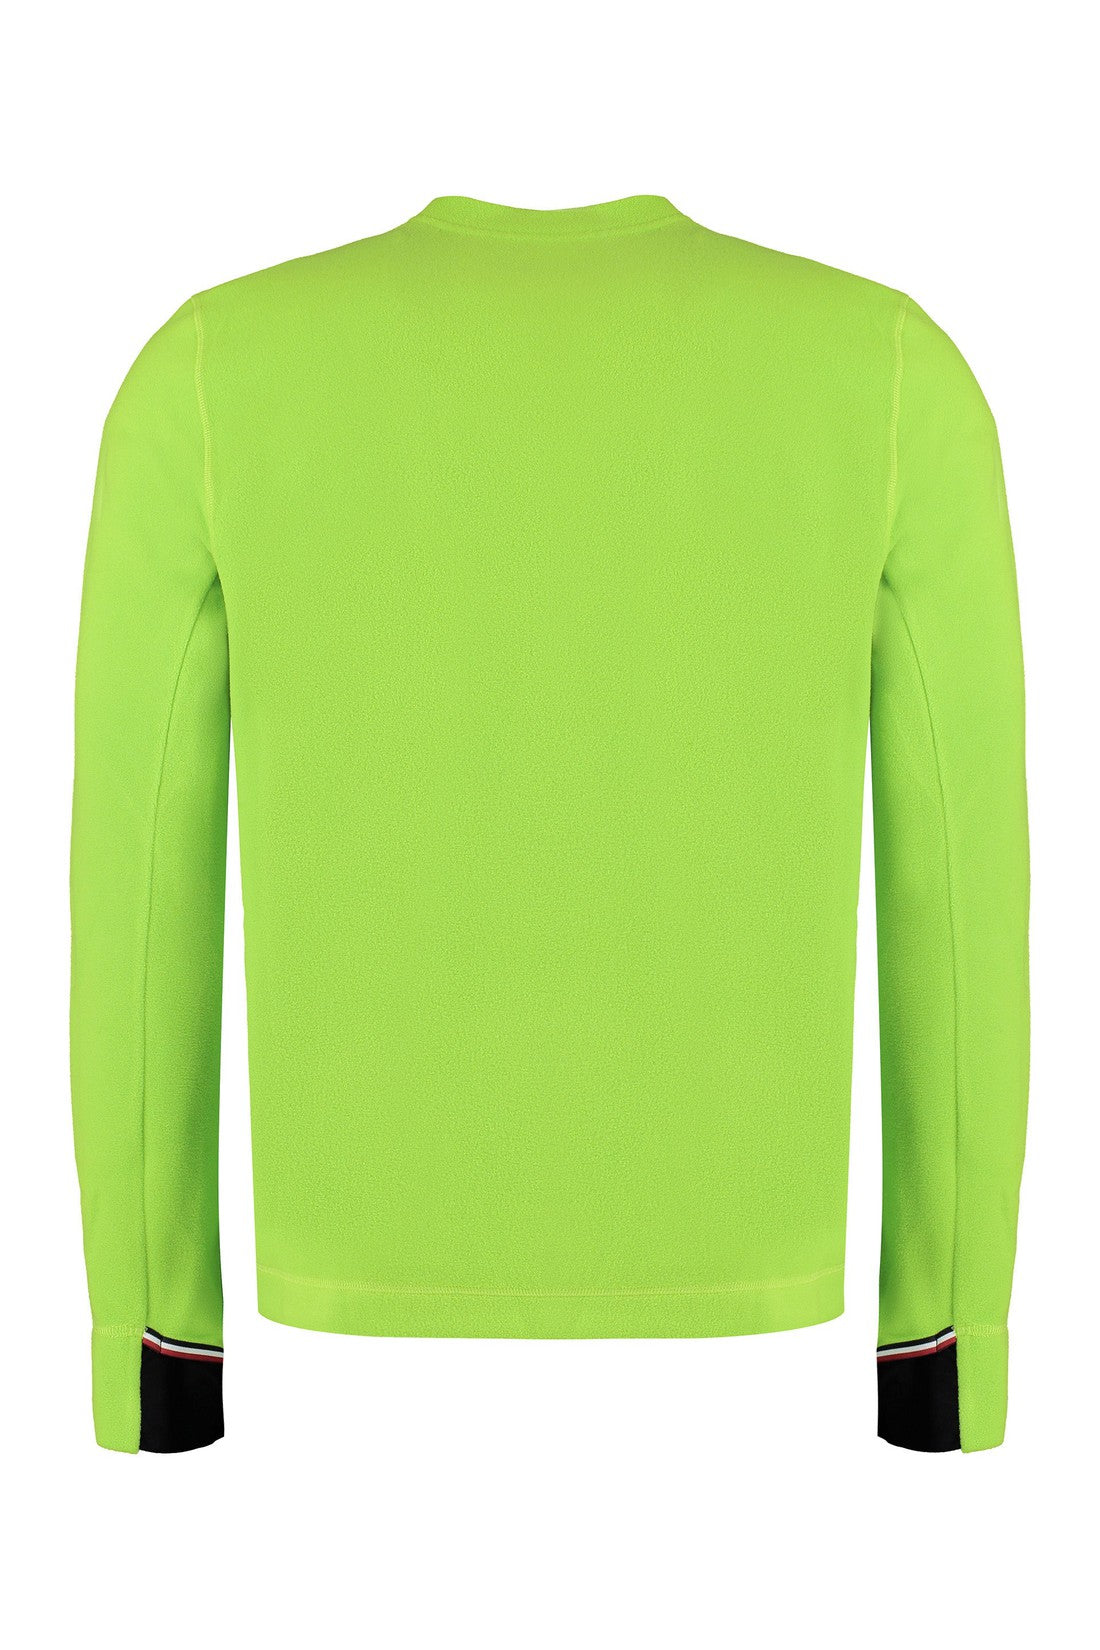 Moncler Grenoble-OUTLET-SALE-Fleece sweatshirt-ARCHIVIST